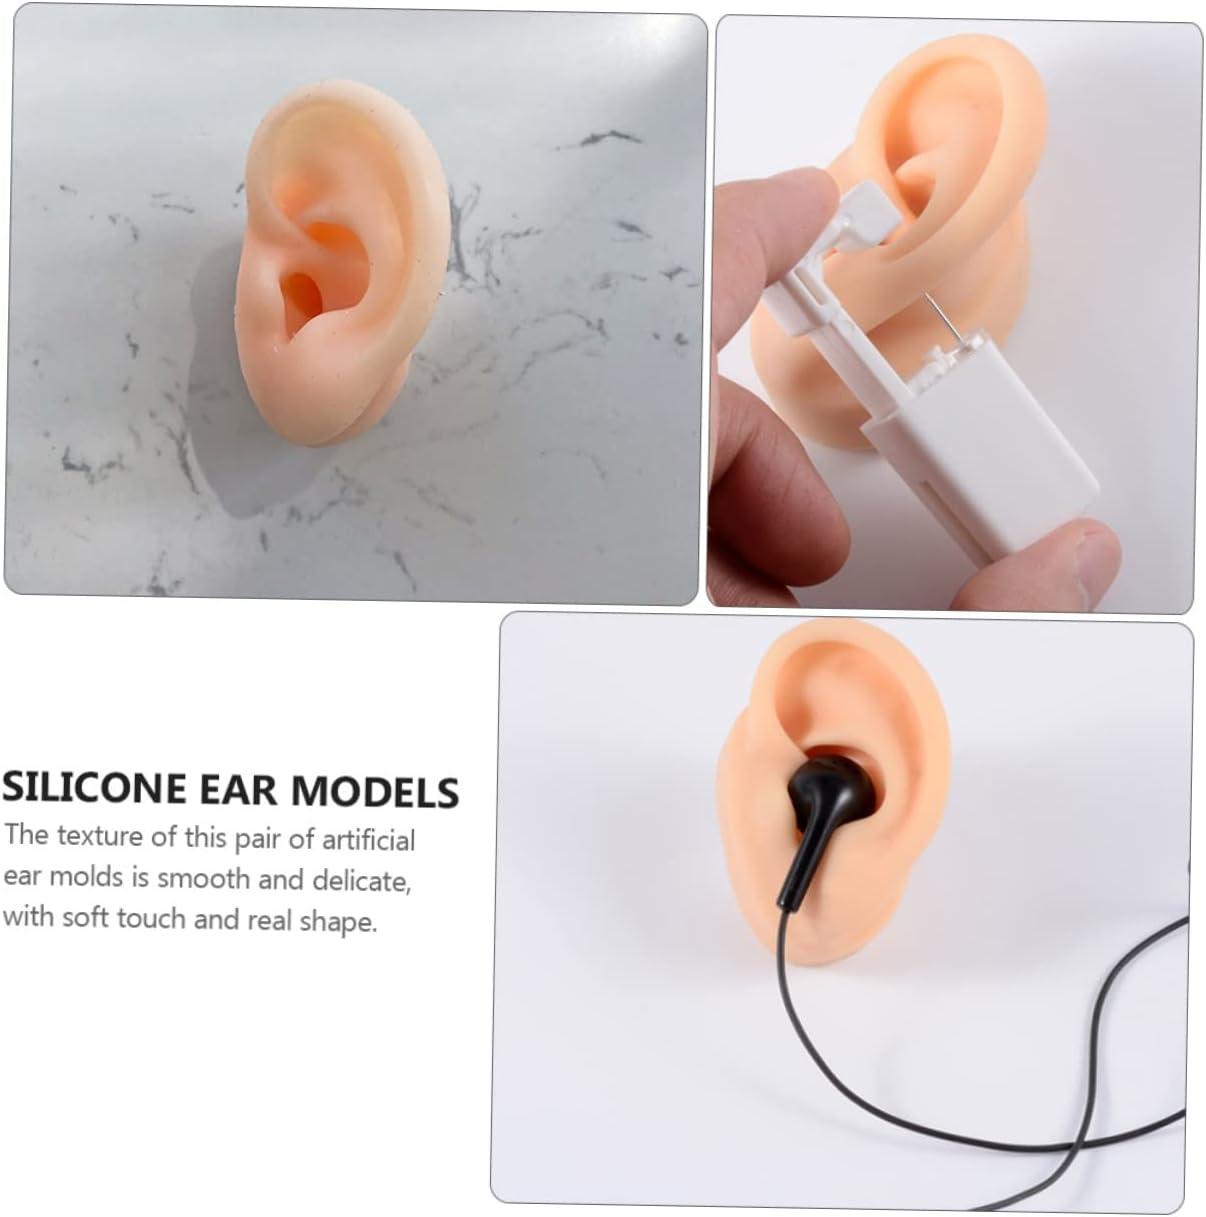 Healifty 4 Pcs Ear Model Silicone Earrings Ear Piercing Jewelry Jewel  Earrings Soft Ear Models Ear Model for Piercing Headset Simulation Ear  Samples Simulation Human Ear Models Human Body 5.66X4.88X5CMx2pcs Assorted  Colorx2pcs